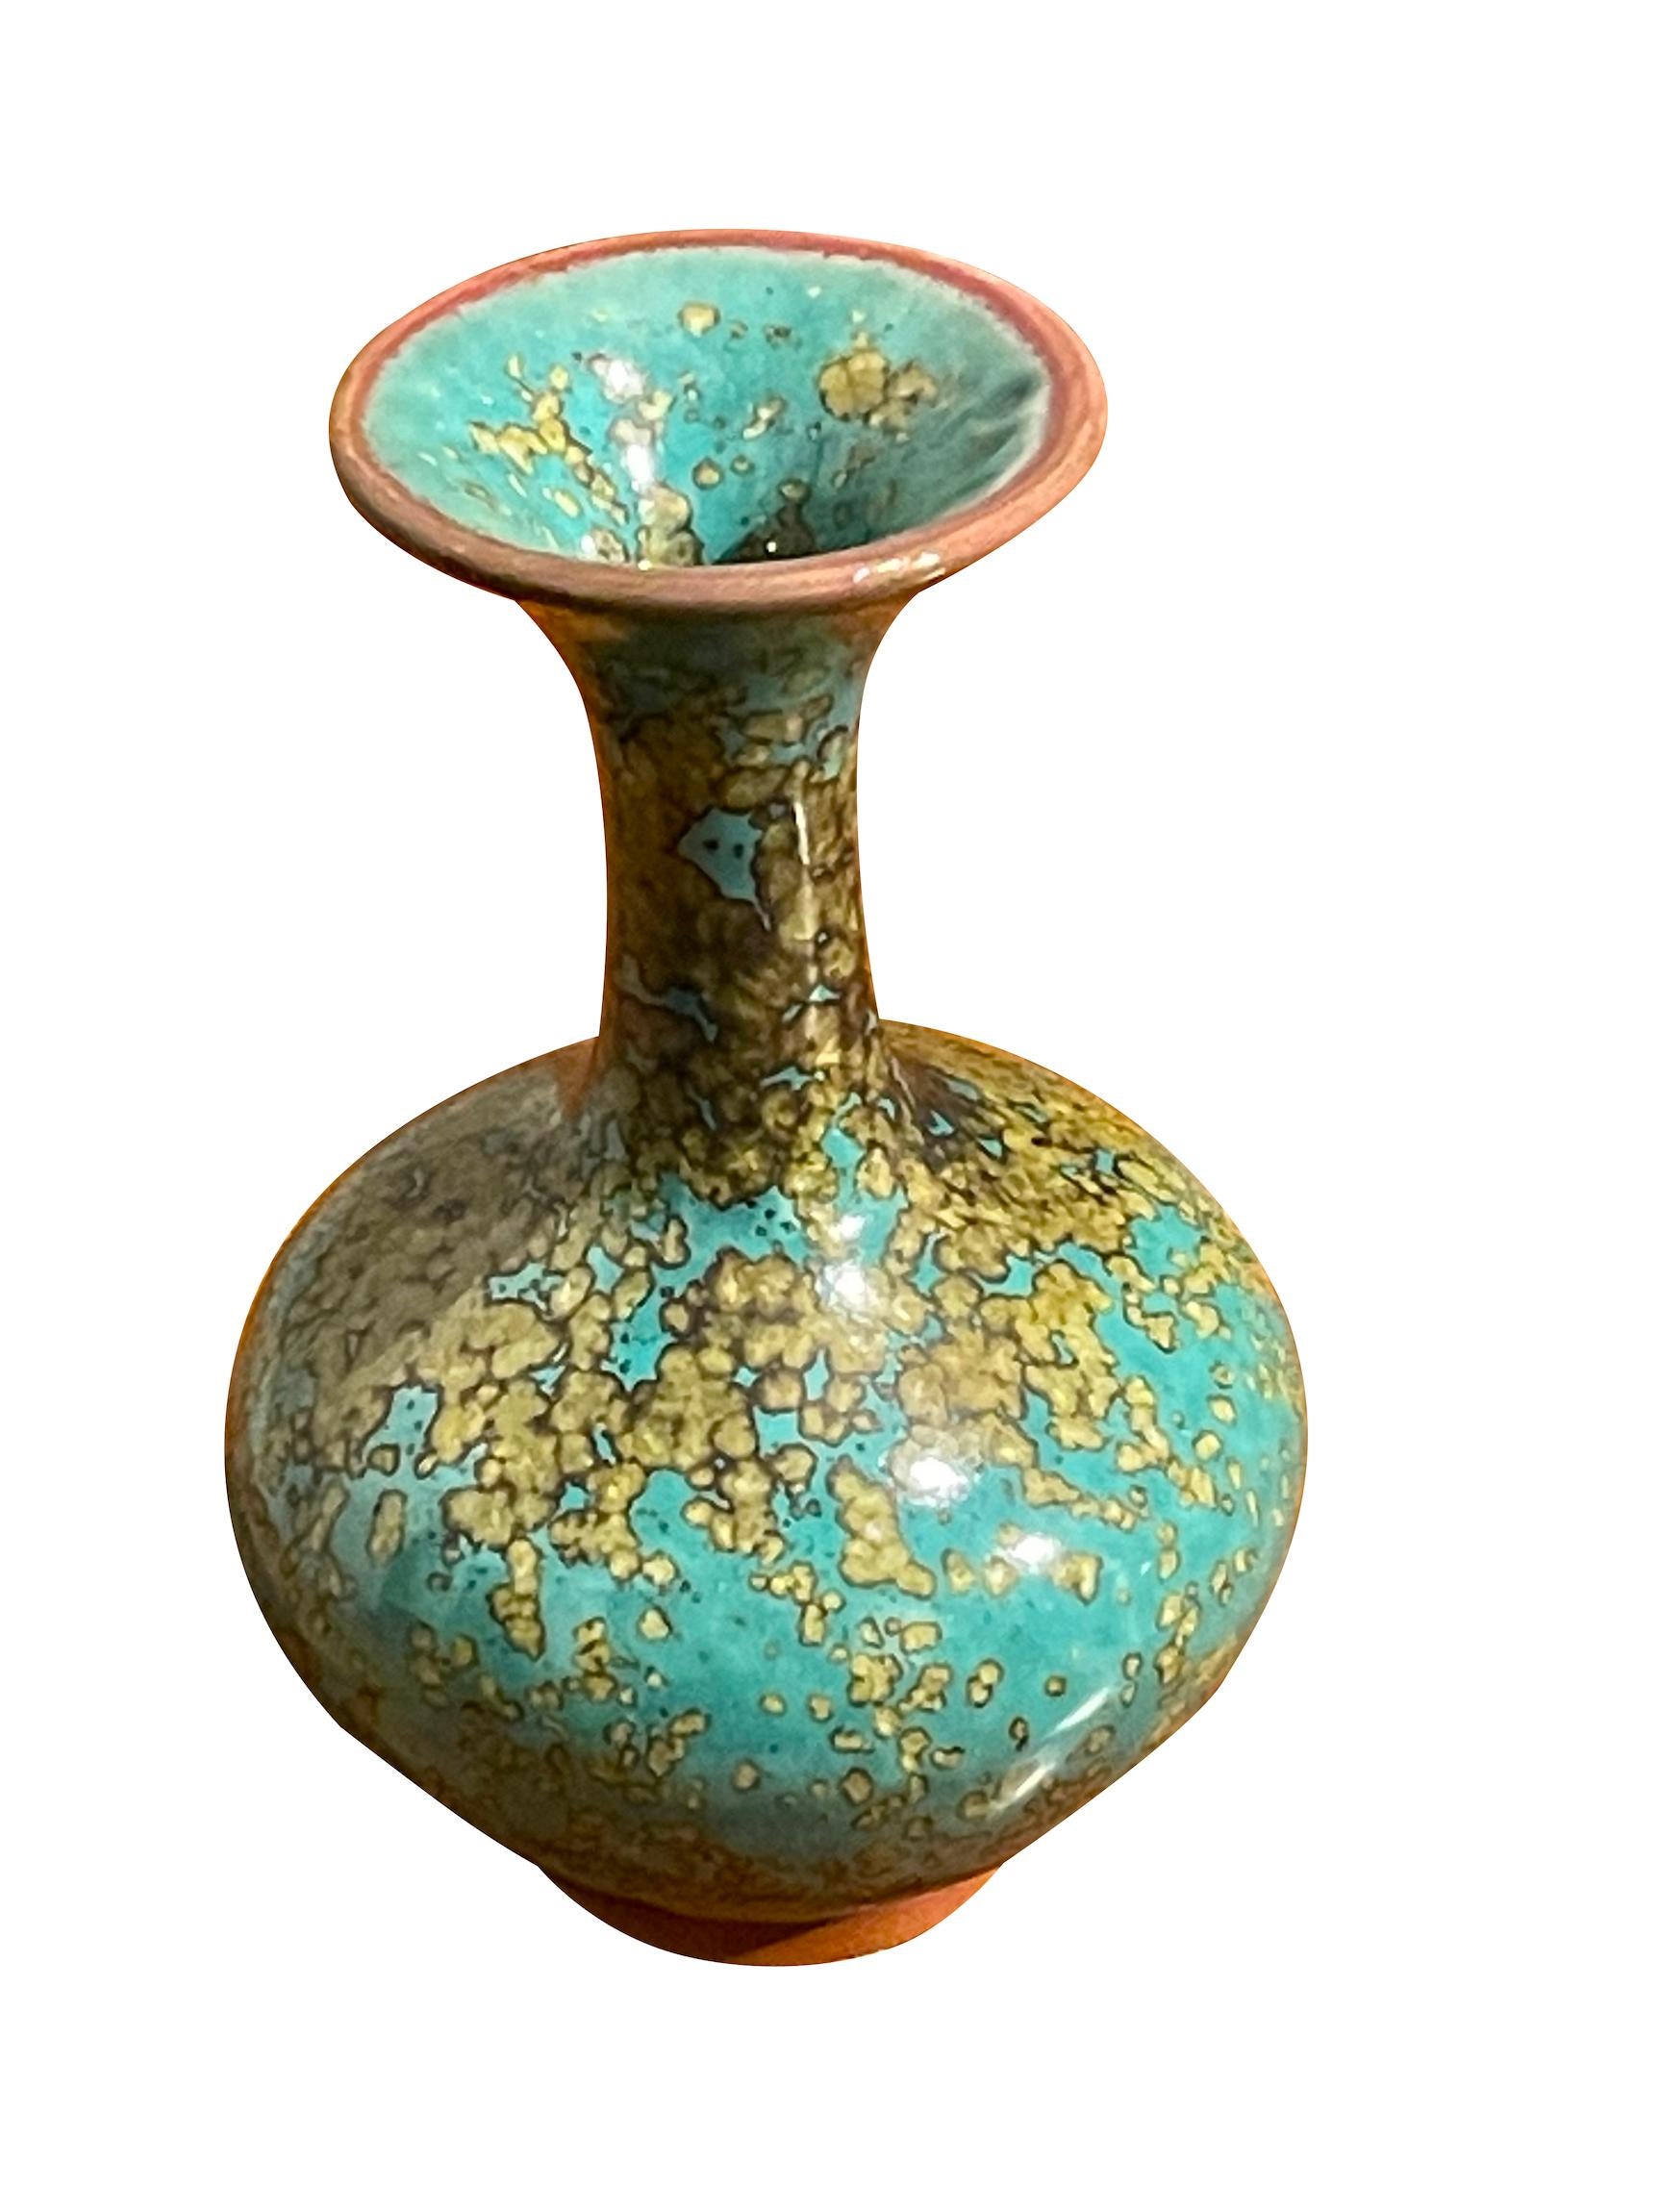 Vase contemporain chinois à glaçure turquoise et mouchetée d'or.
Forme classique avec large ouverture du bec.
Une pièce parmi d'autres d'une grande collection.
ARRIVÉE EN MARS